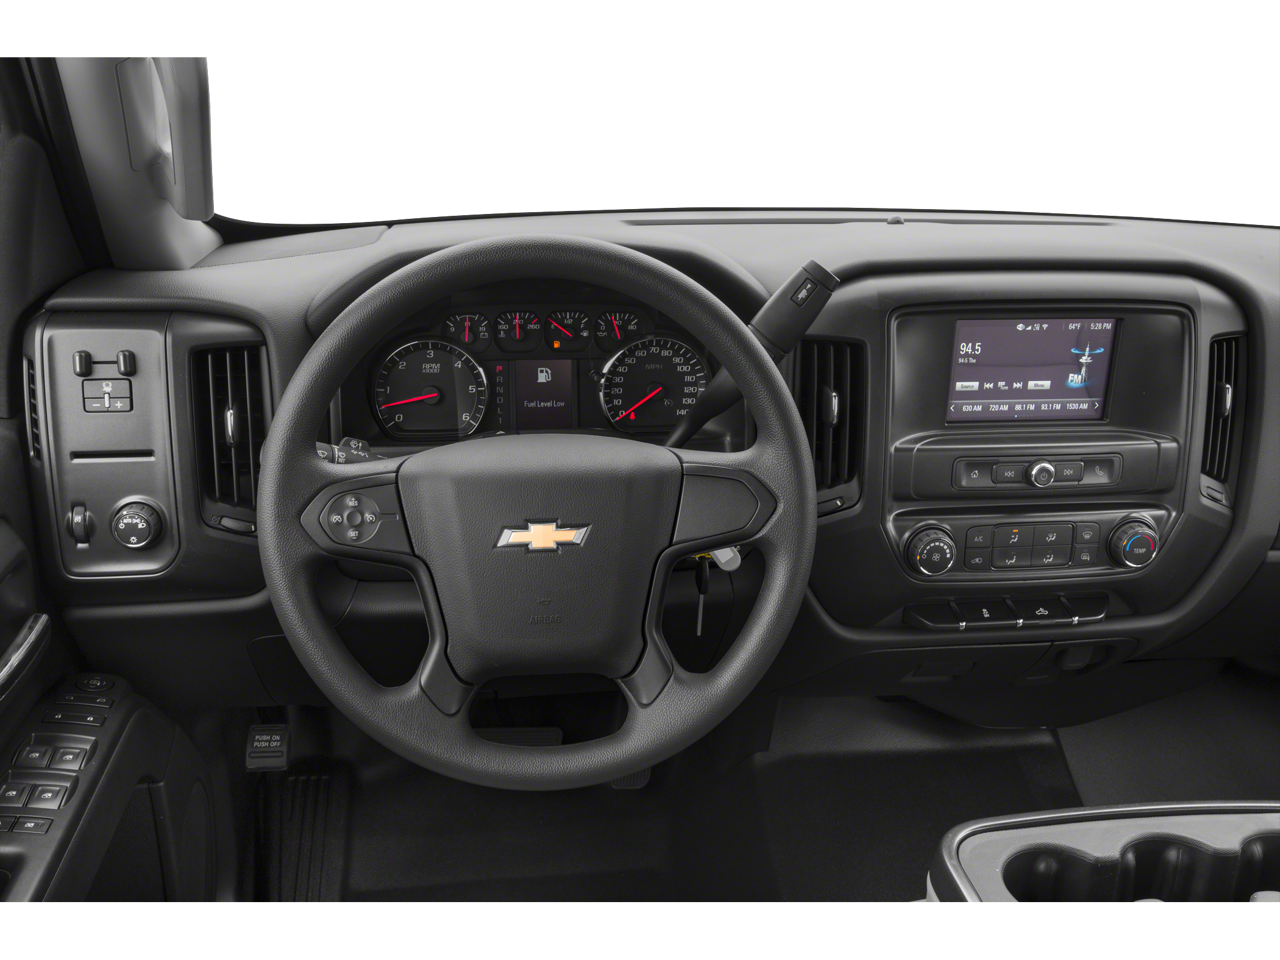 2019 Chevrolet Silverado 2500HD LT 4WD Double Cab 144.2